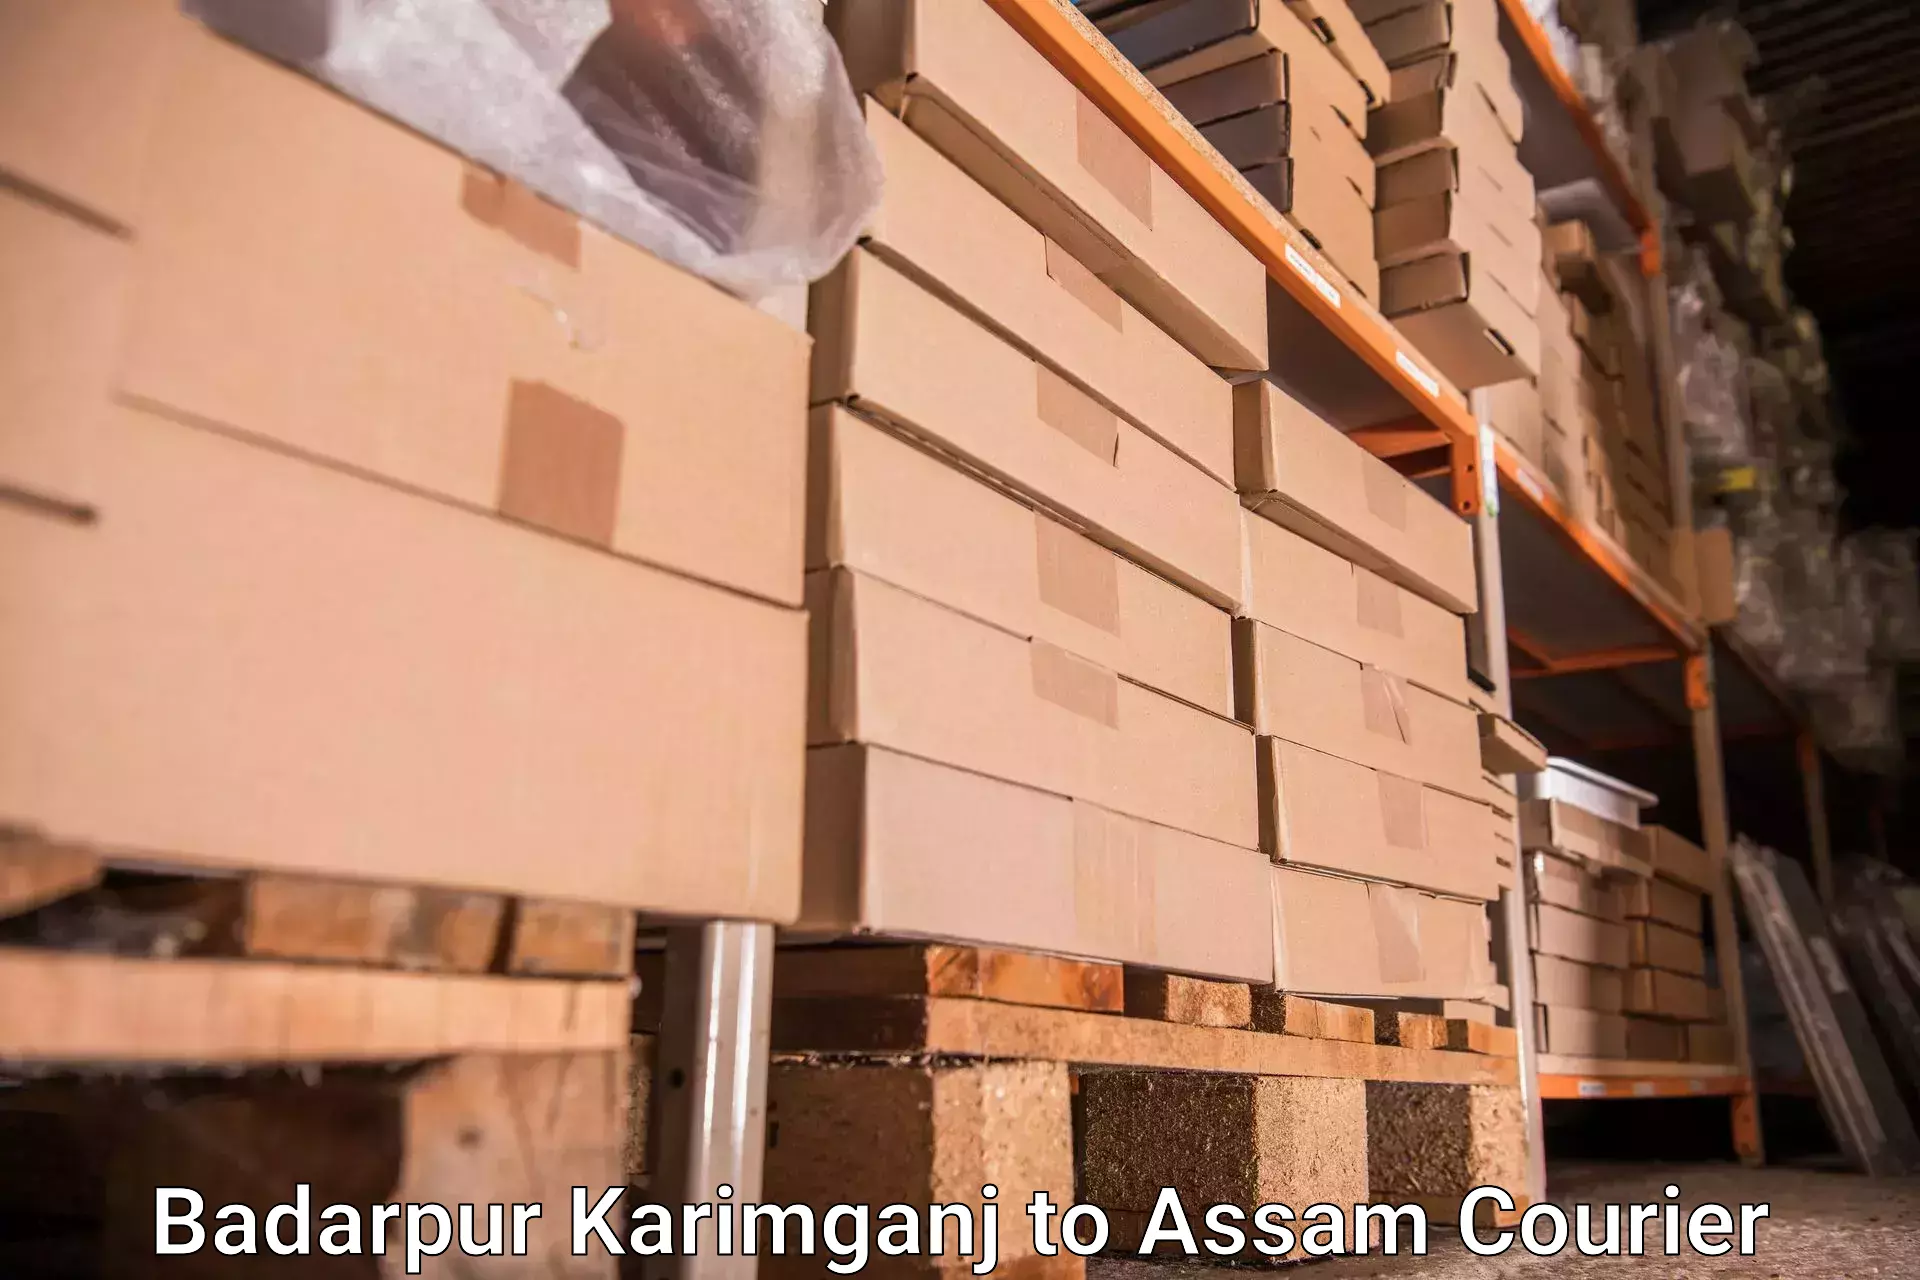 Baggage delivery management Badarpur Karimganj to Udharbond